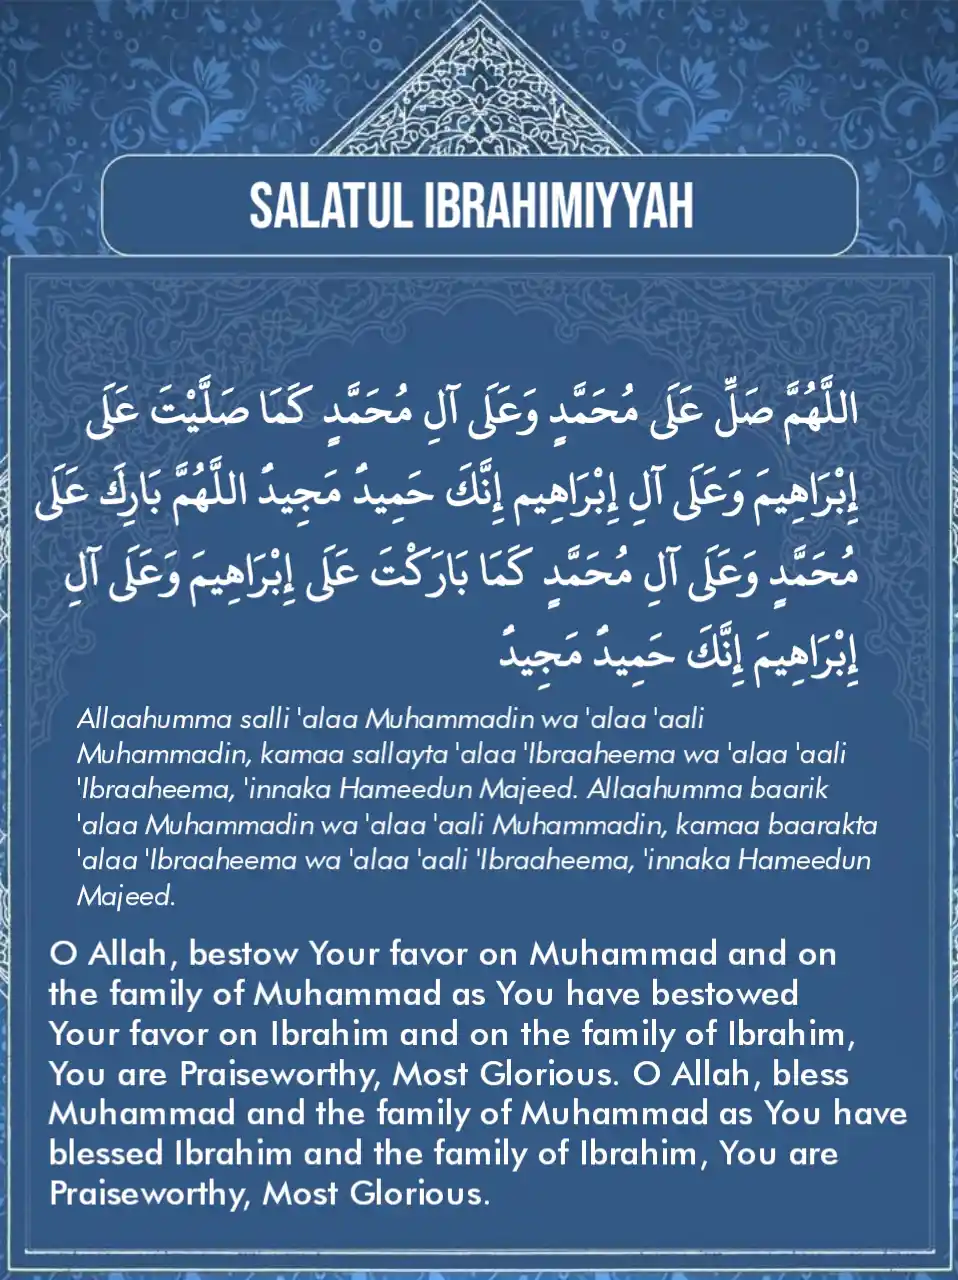 Salatul Ibrahimiyyah